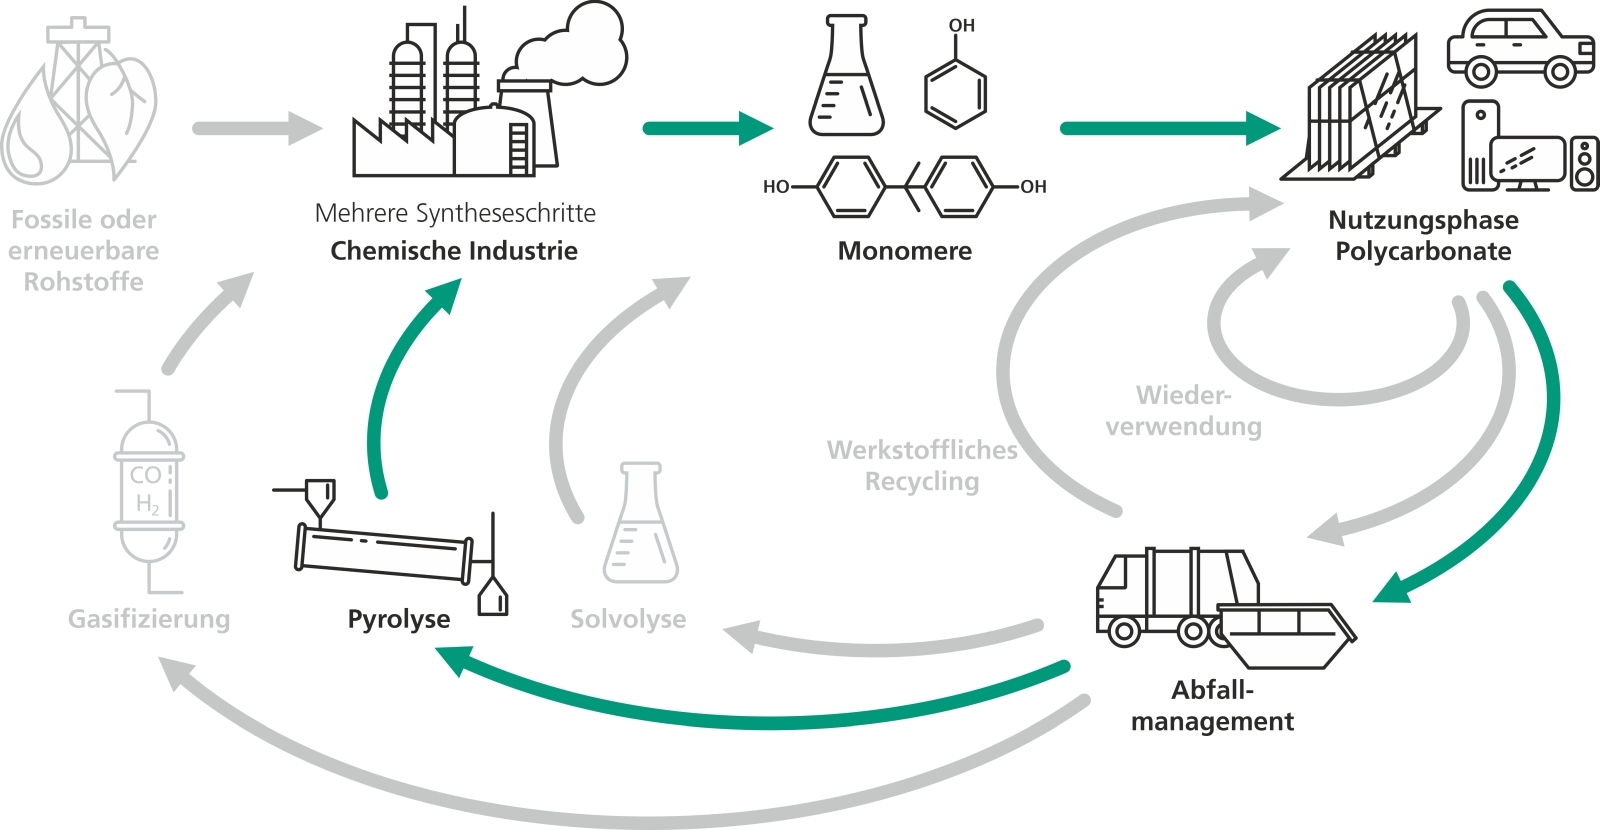 Einordnung des chemischen Recyclings mittels Pyrolyse in ein ganzheitliches Recyclingkonzept. Pyrolyse-Drehrohrofen im Technikumsmaßstab mit eigens entwickelter Kondensationsanlage im Vordergrund 